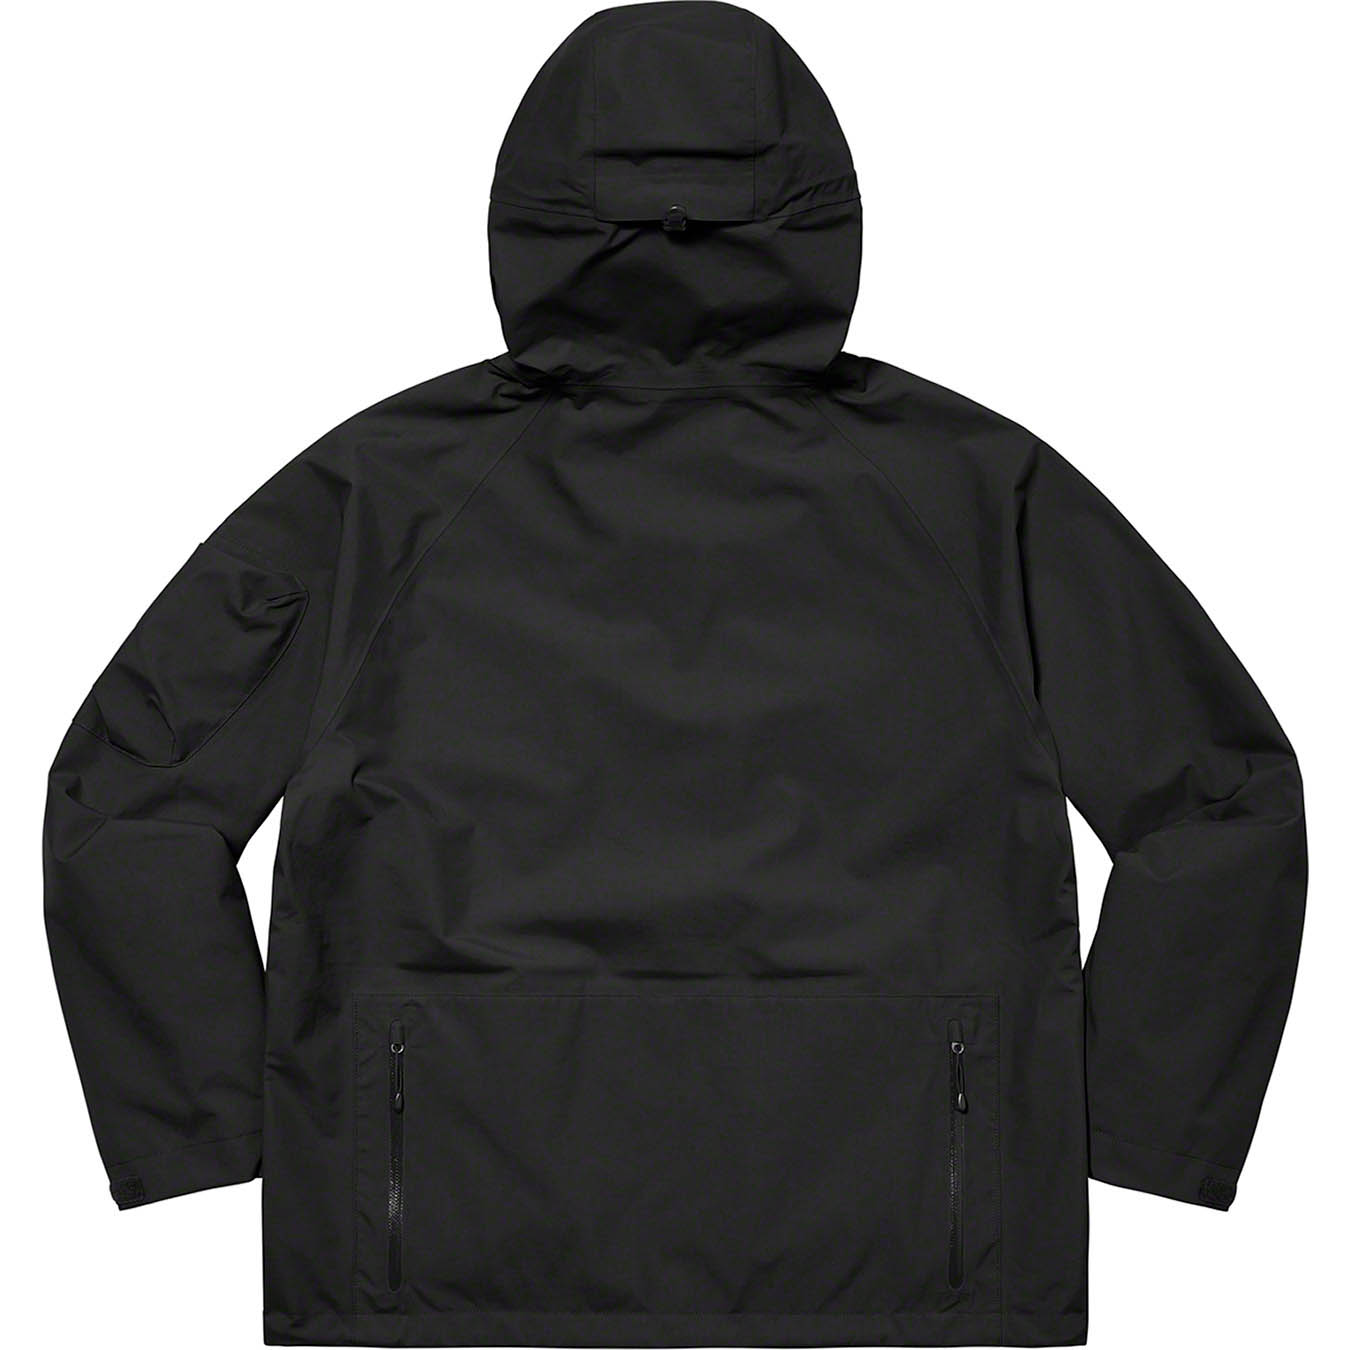 Supreme GORE-TEX Tech Shell Jacket